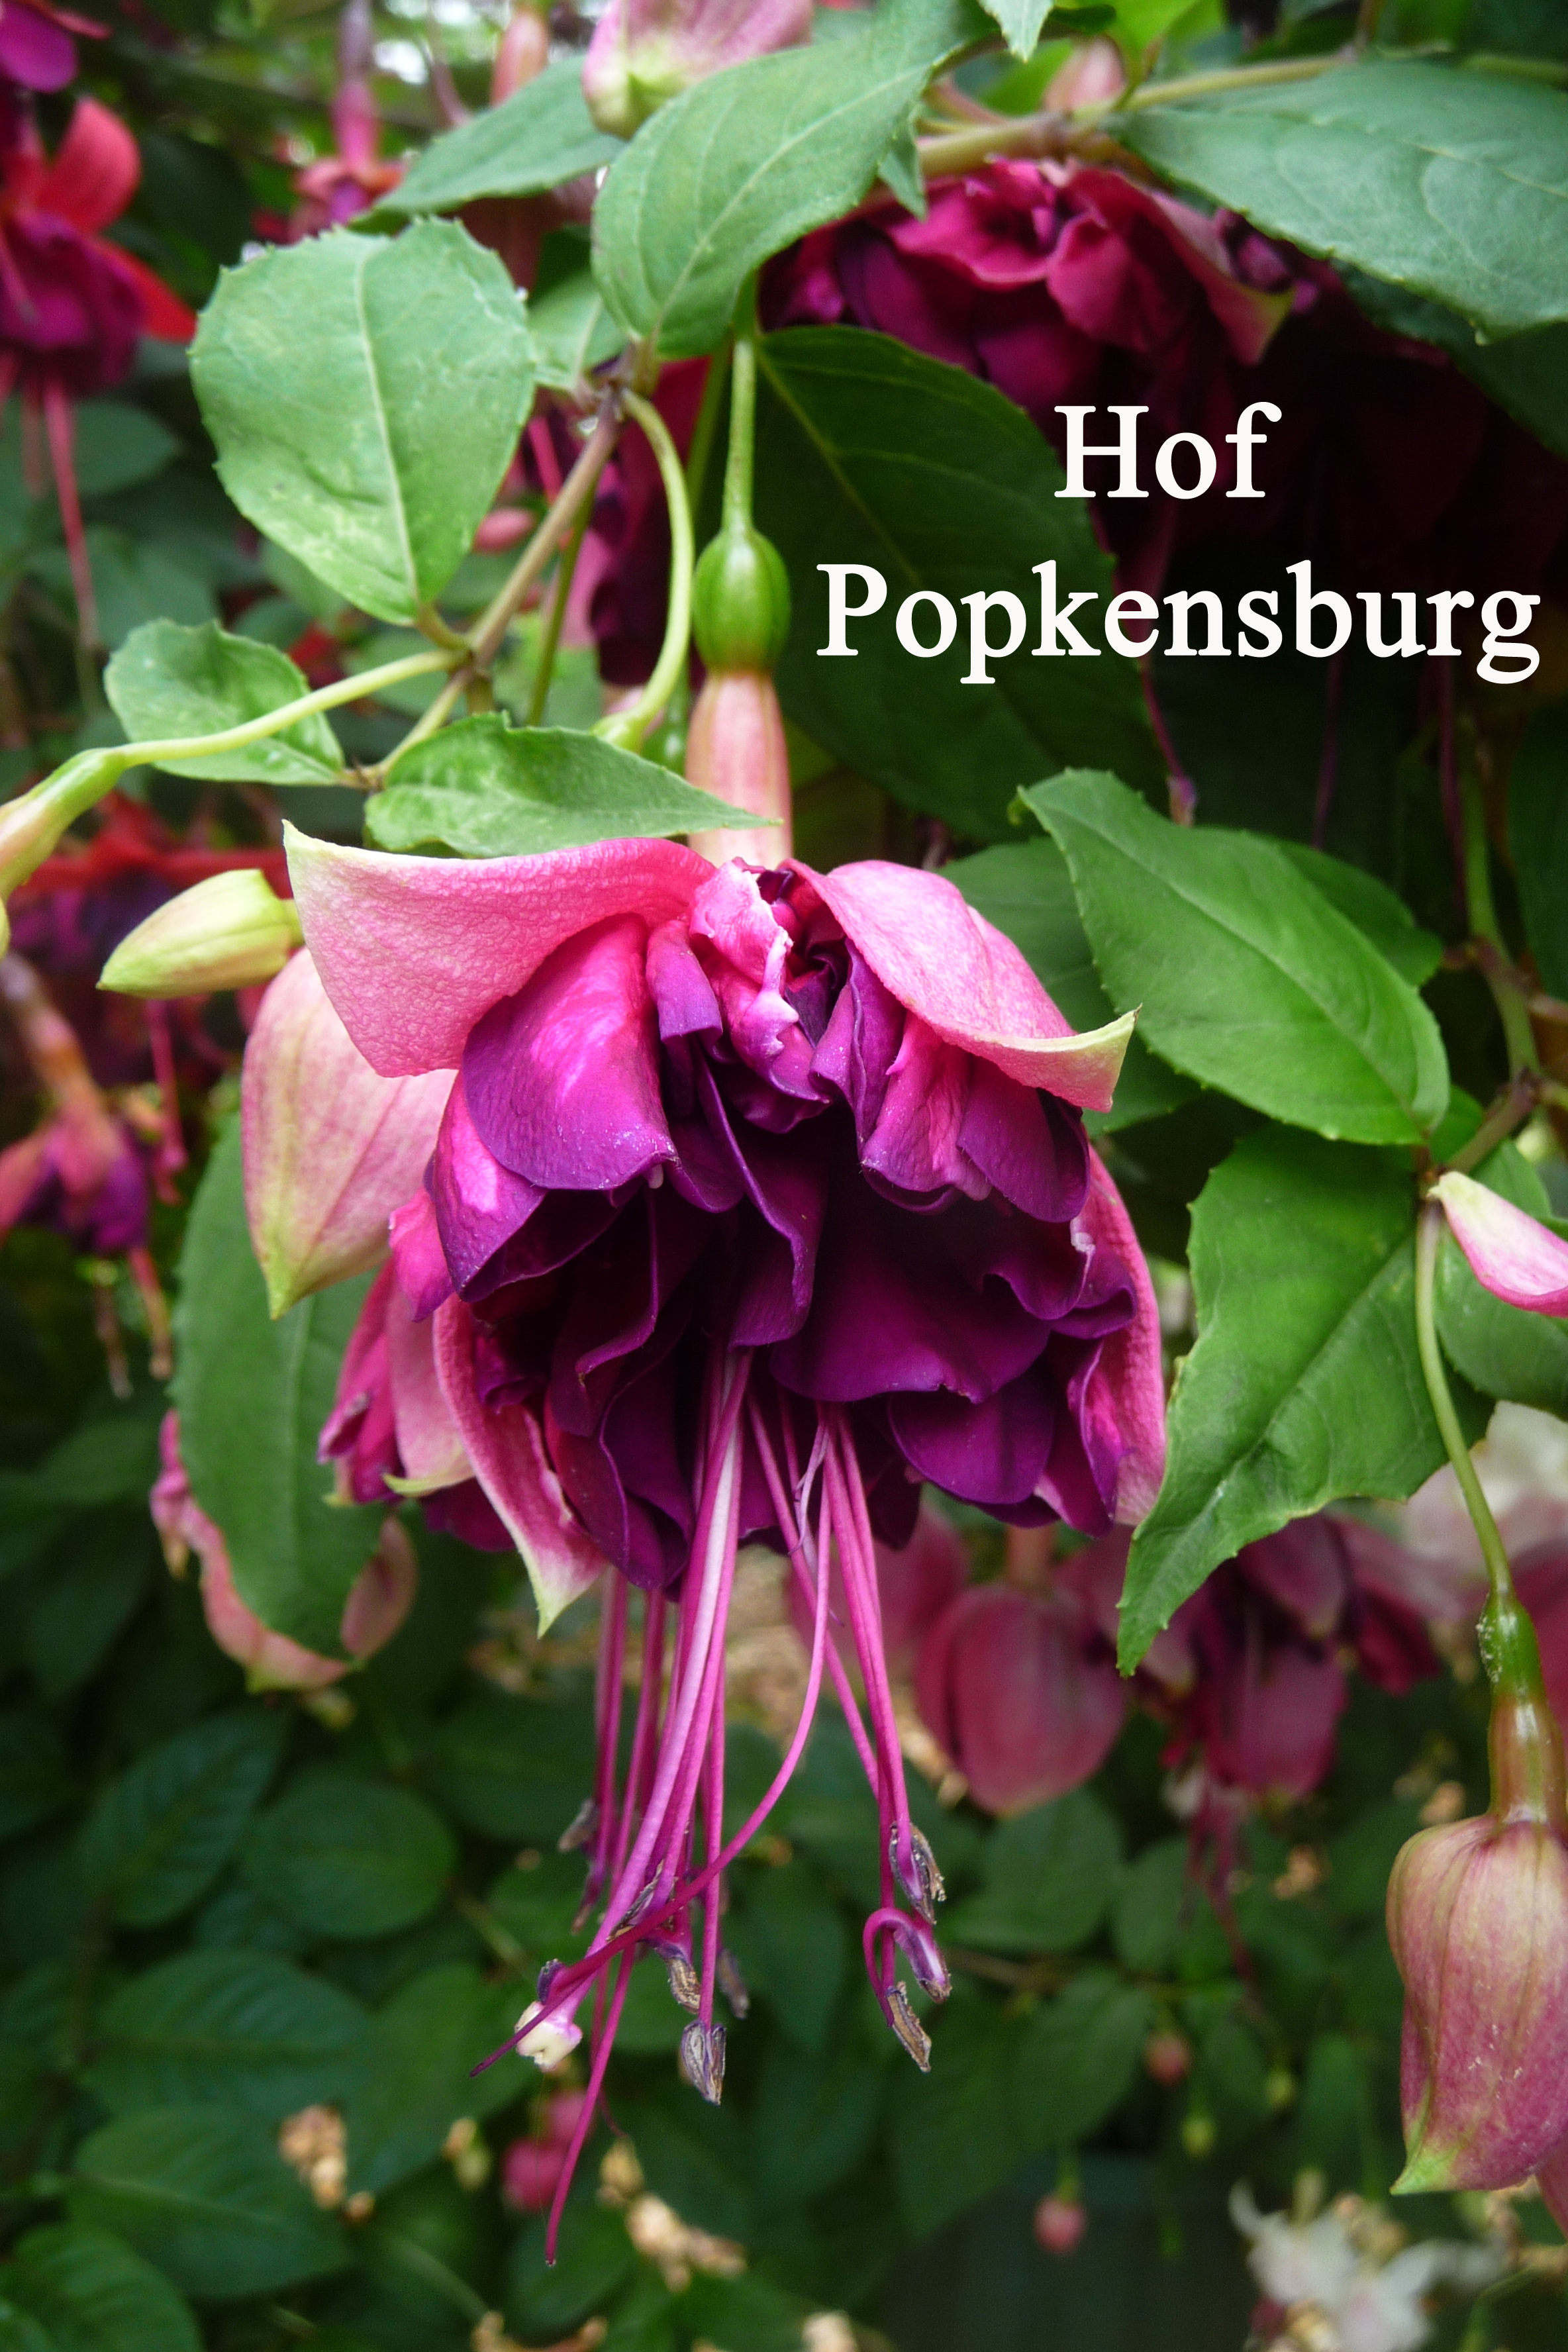 Hof Popkensburg